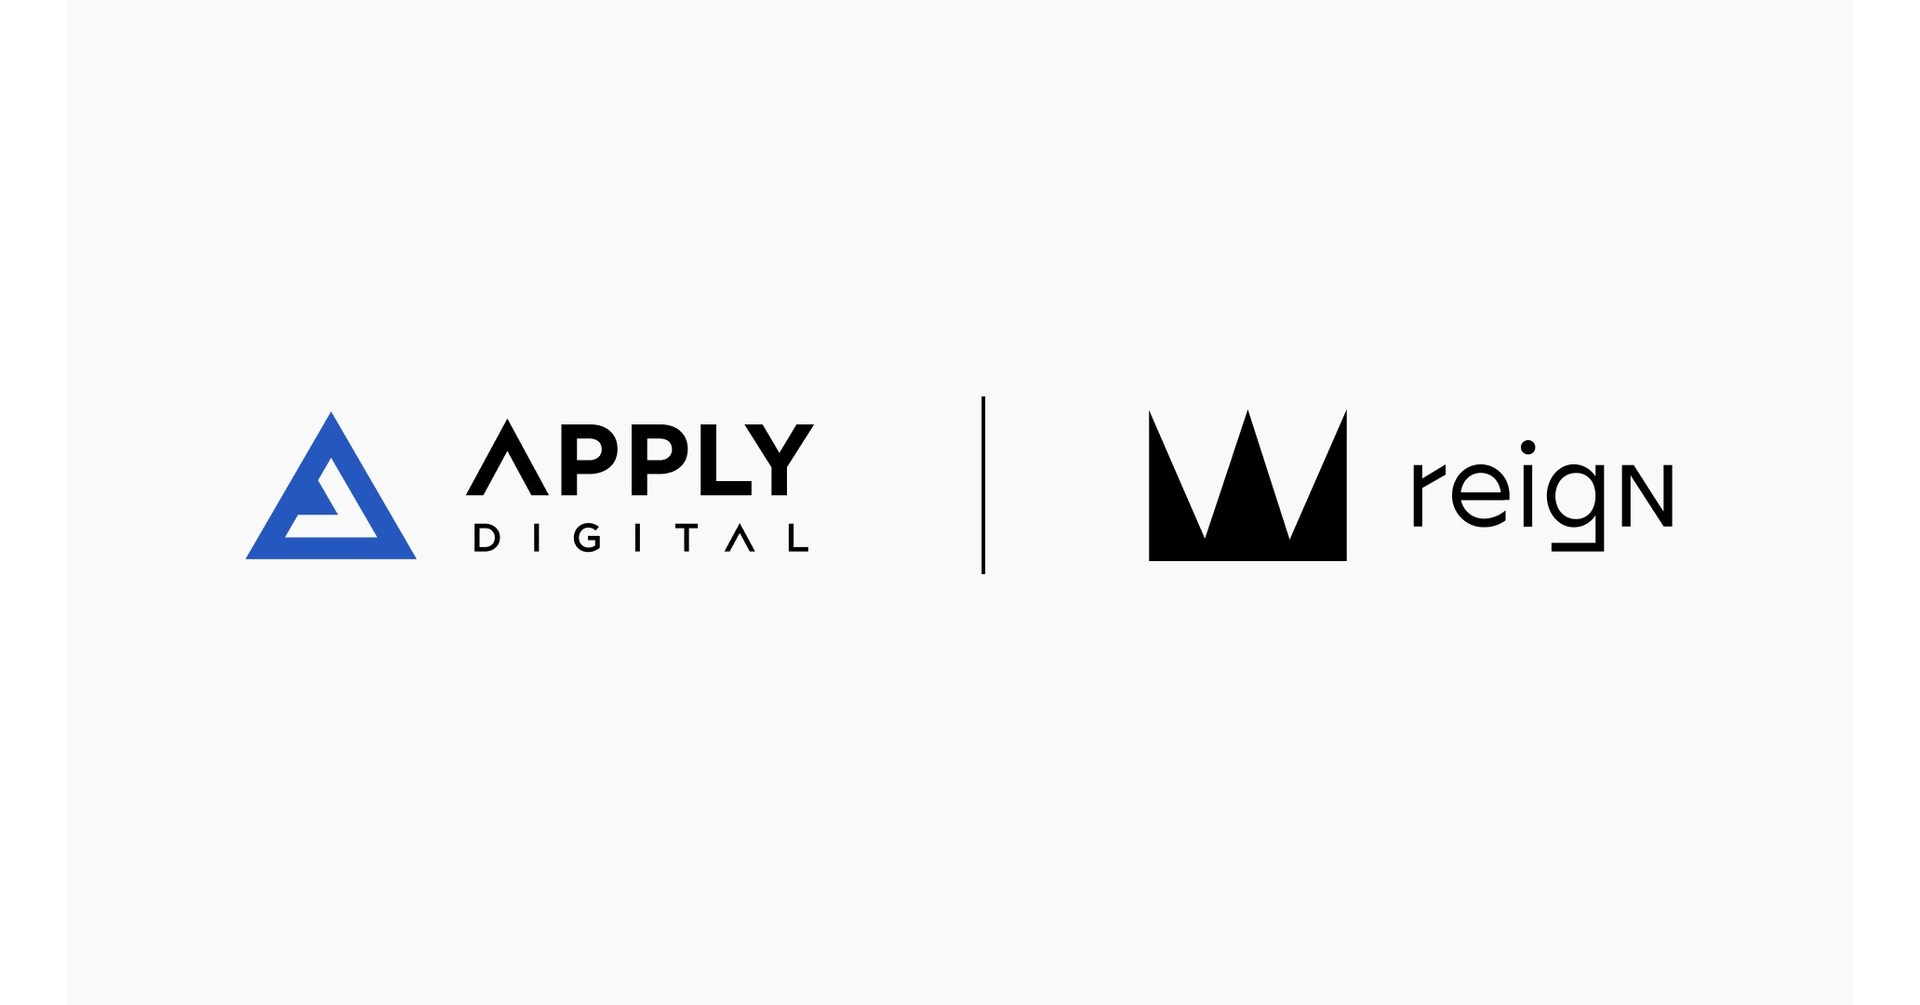 Apply Digital adquiere Reign para fortalecer aún más su capacidad de atender marcas globales